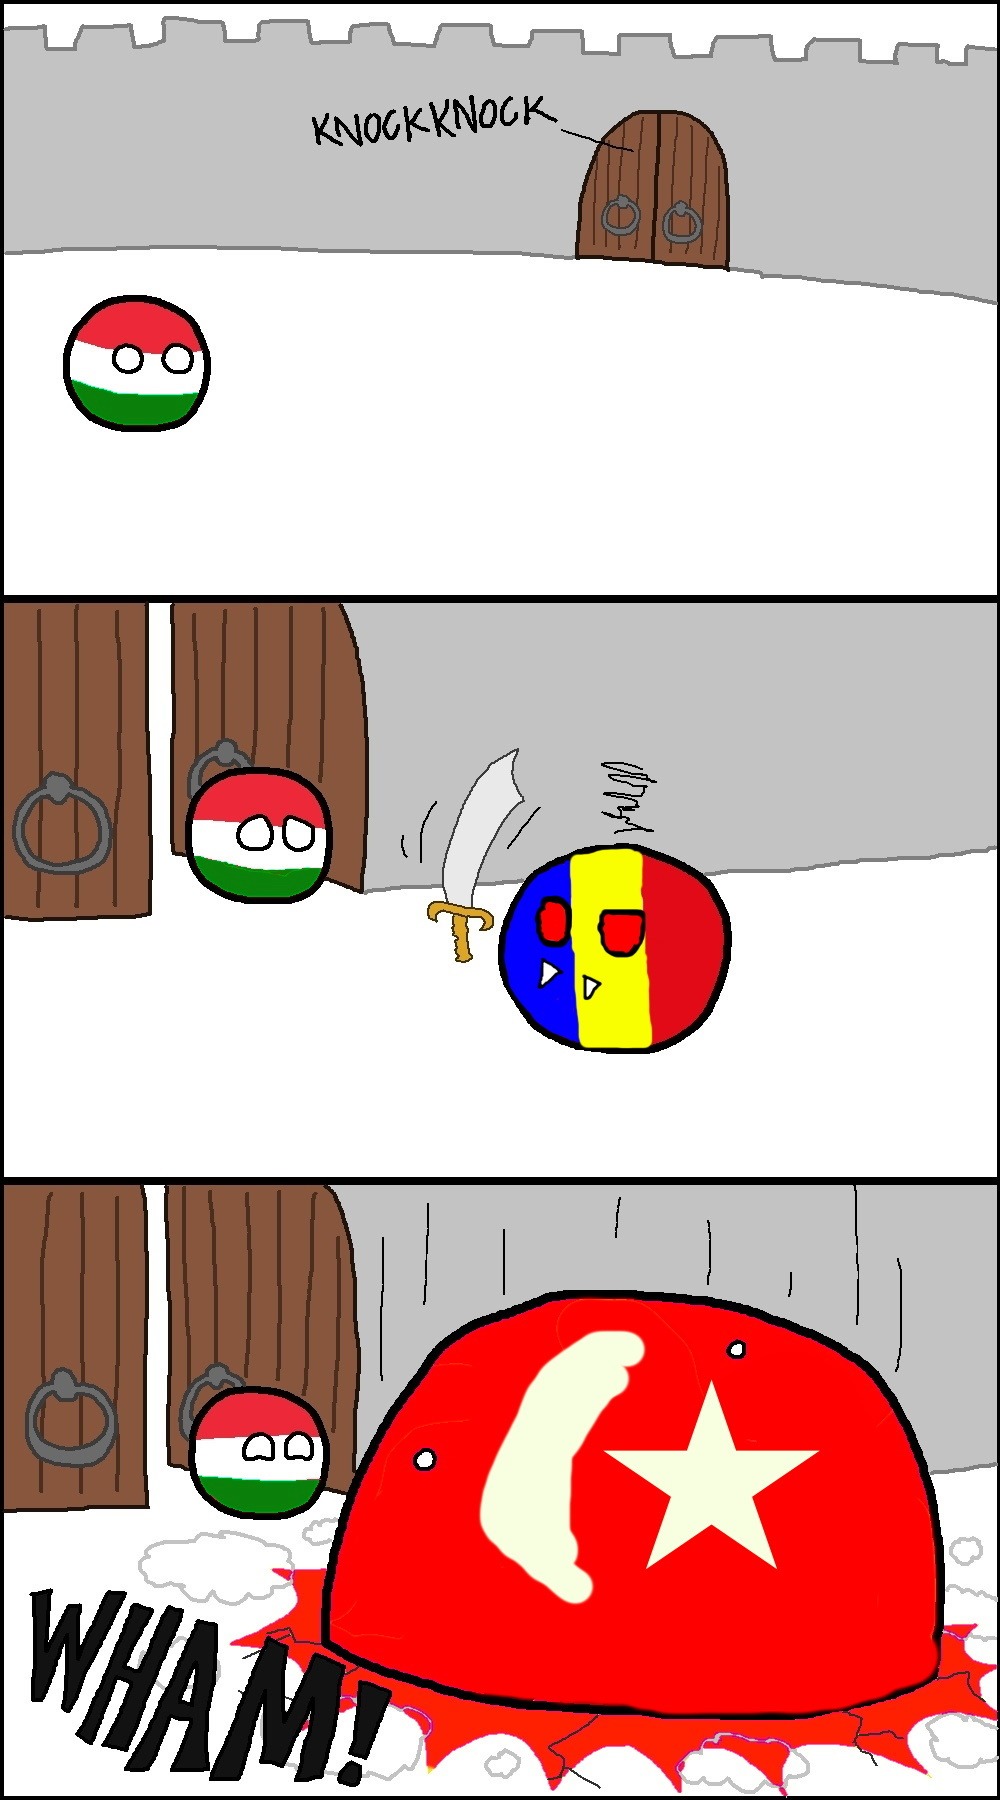 hungary vs romania but turkey - meme